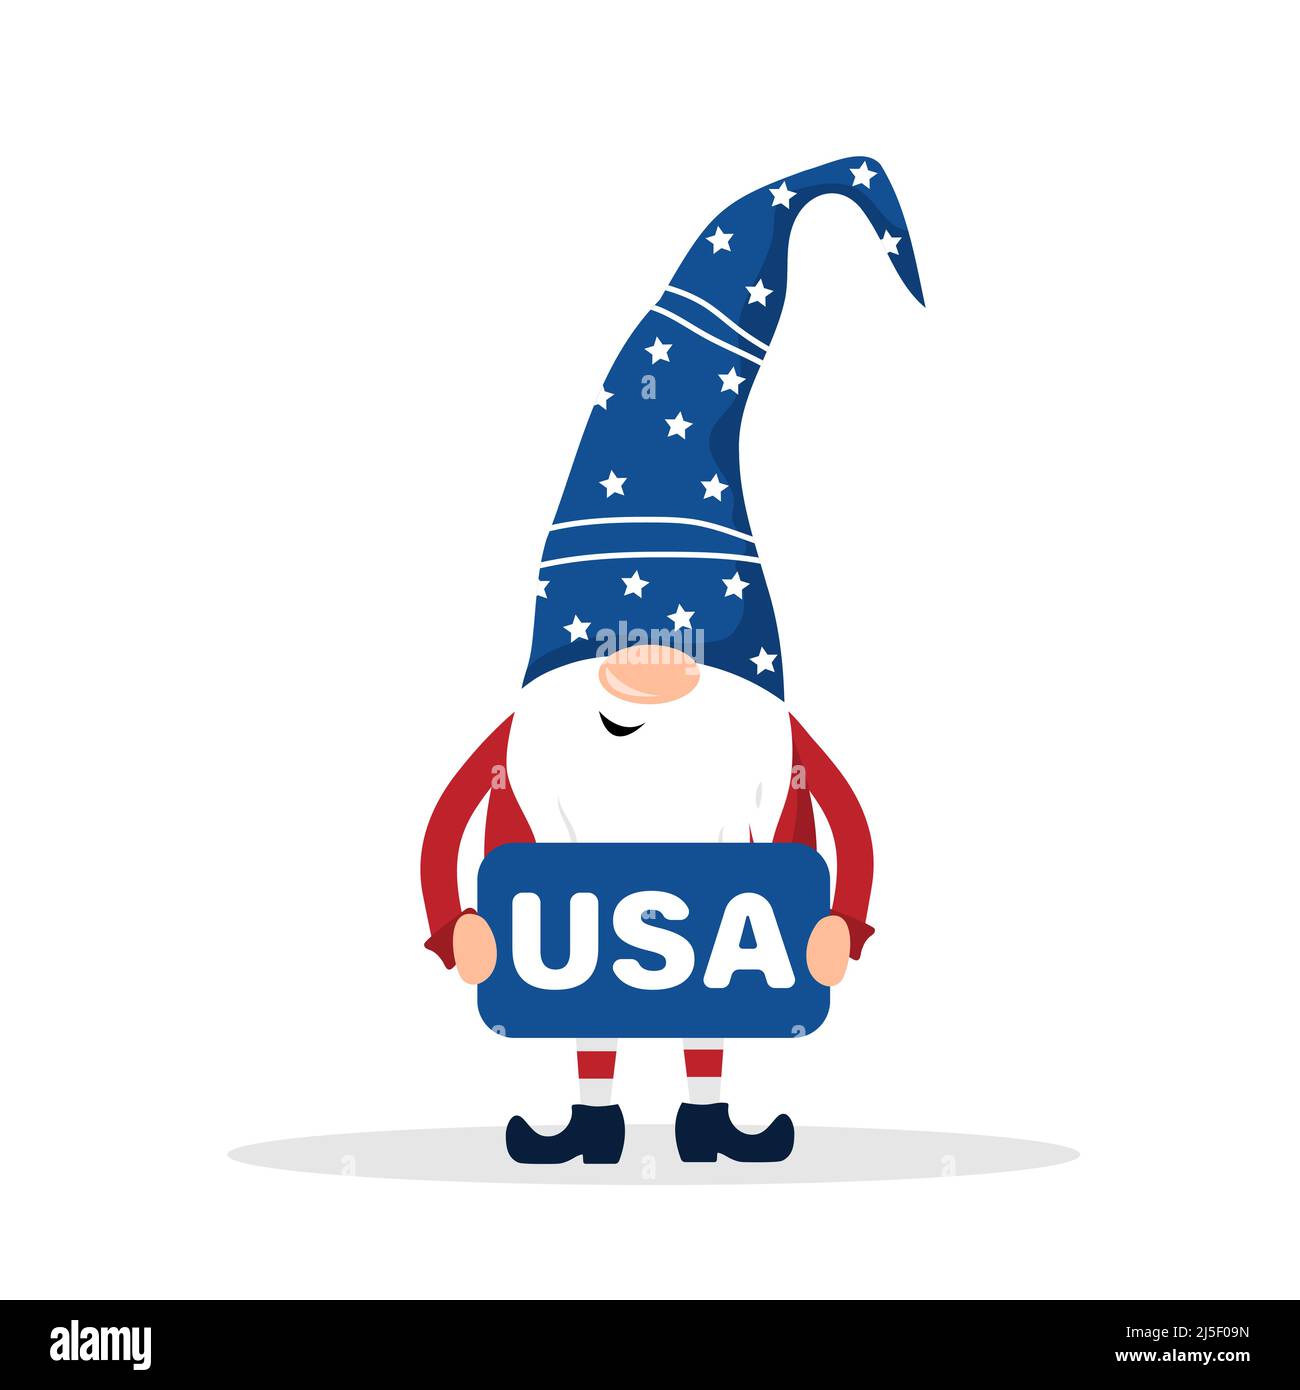 Patriotischer amerikanischer Zwerg. Süßer skandinavischer Zwerg. Elf feiern den Unabhängigkeitstag in den Vereinigten Staaten. Frohes 4.. juli. Vektorgrafik in flacher Form Stock Vektor